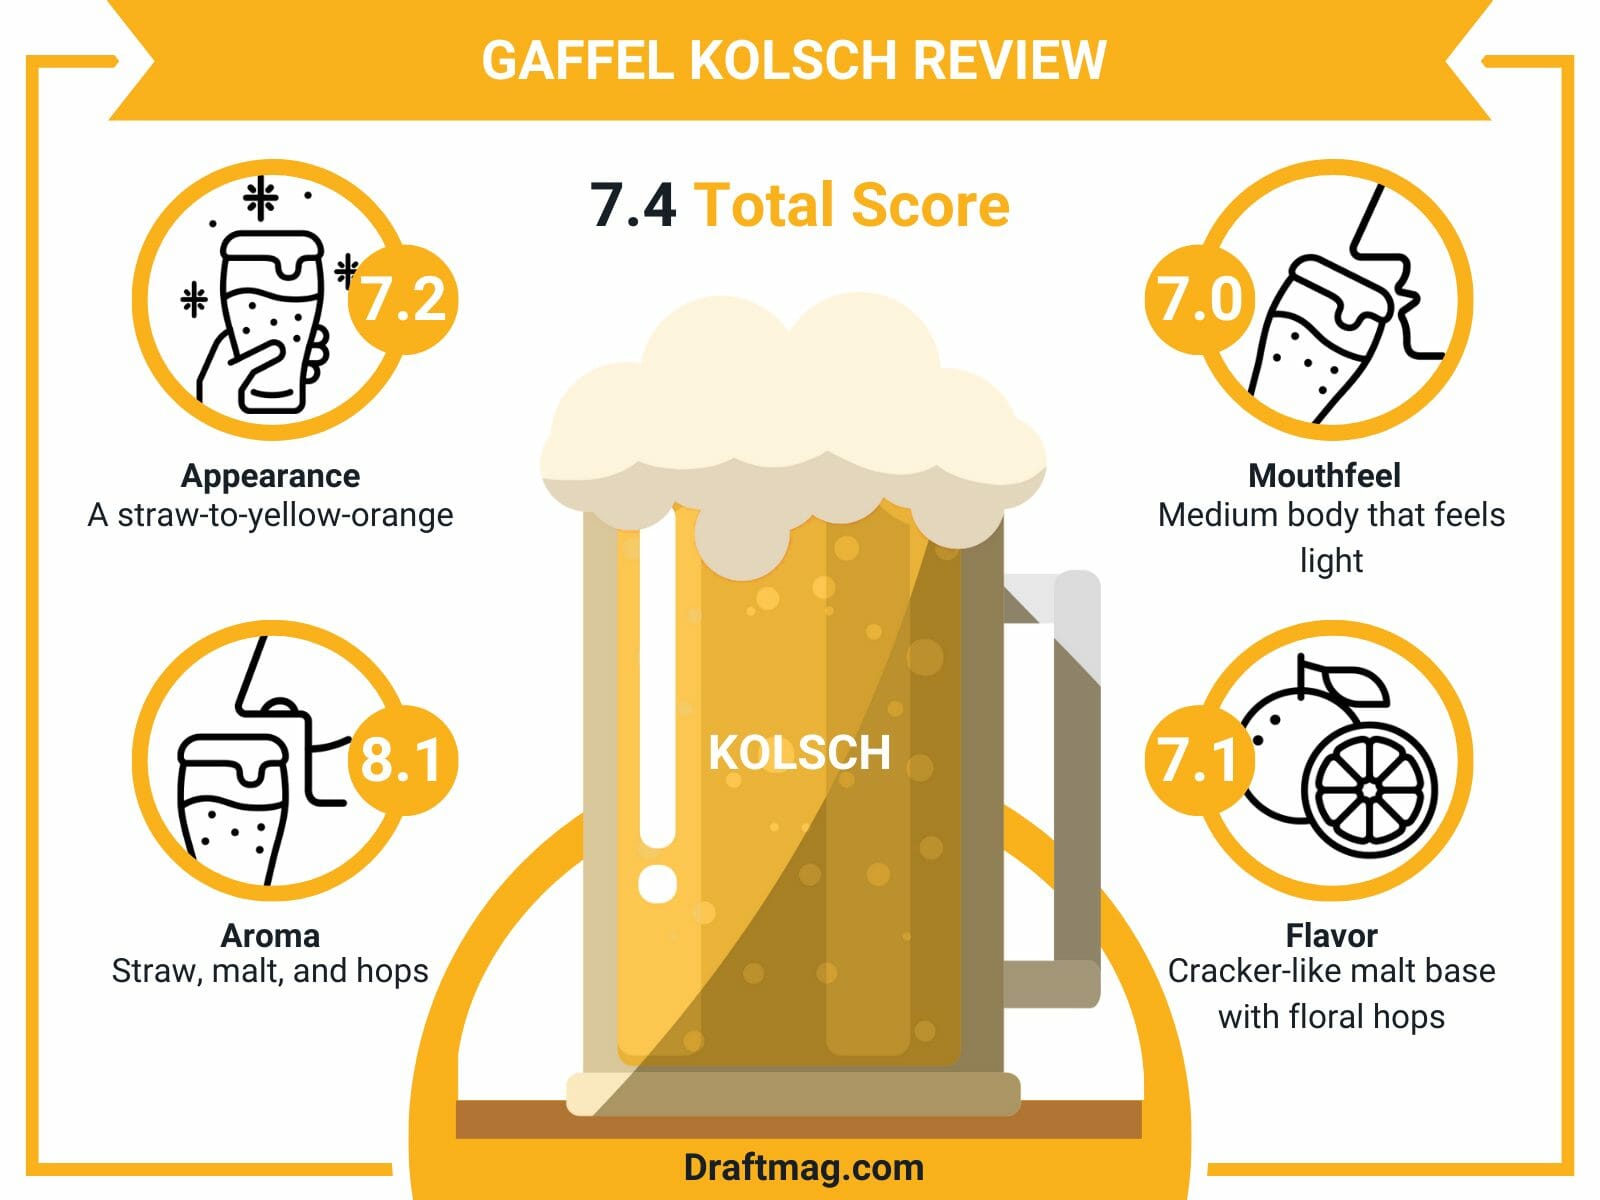 Gaffel kolsch review infographic